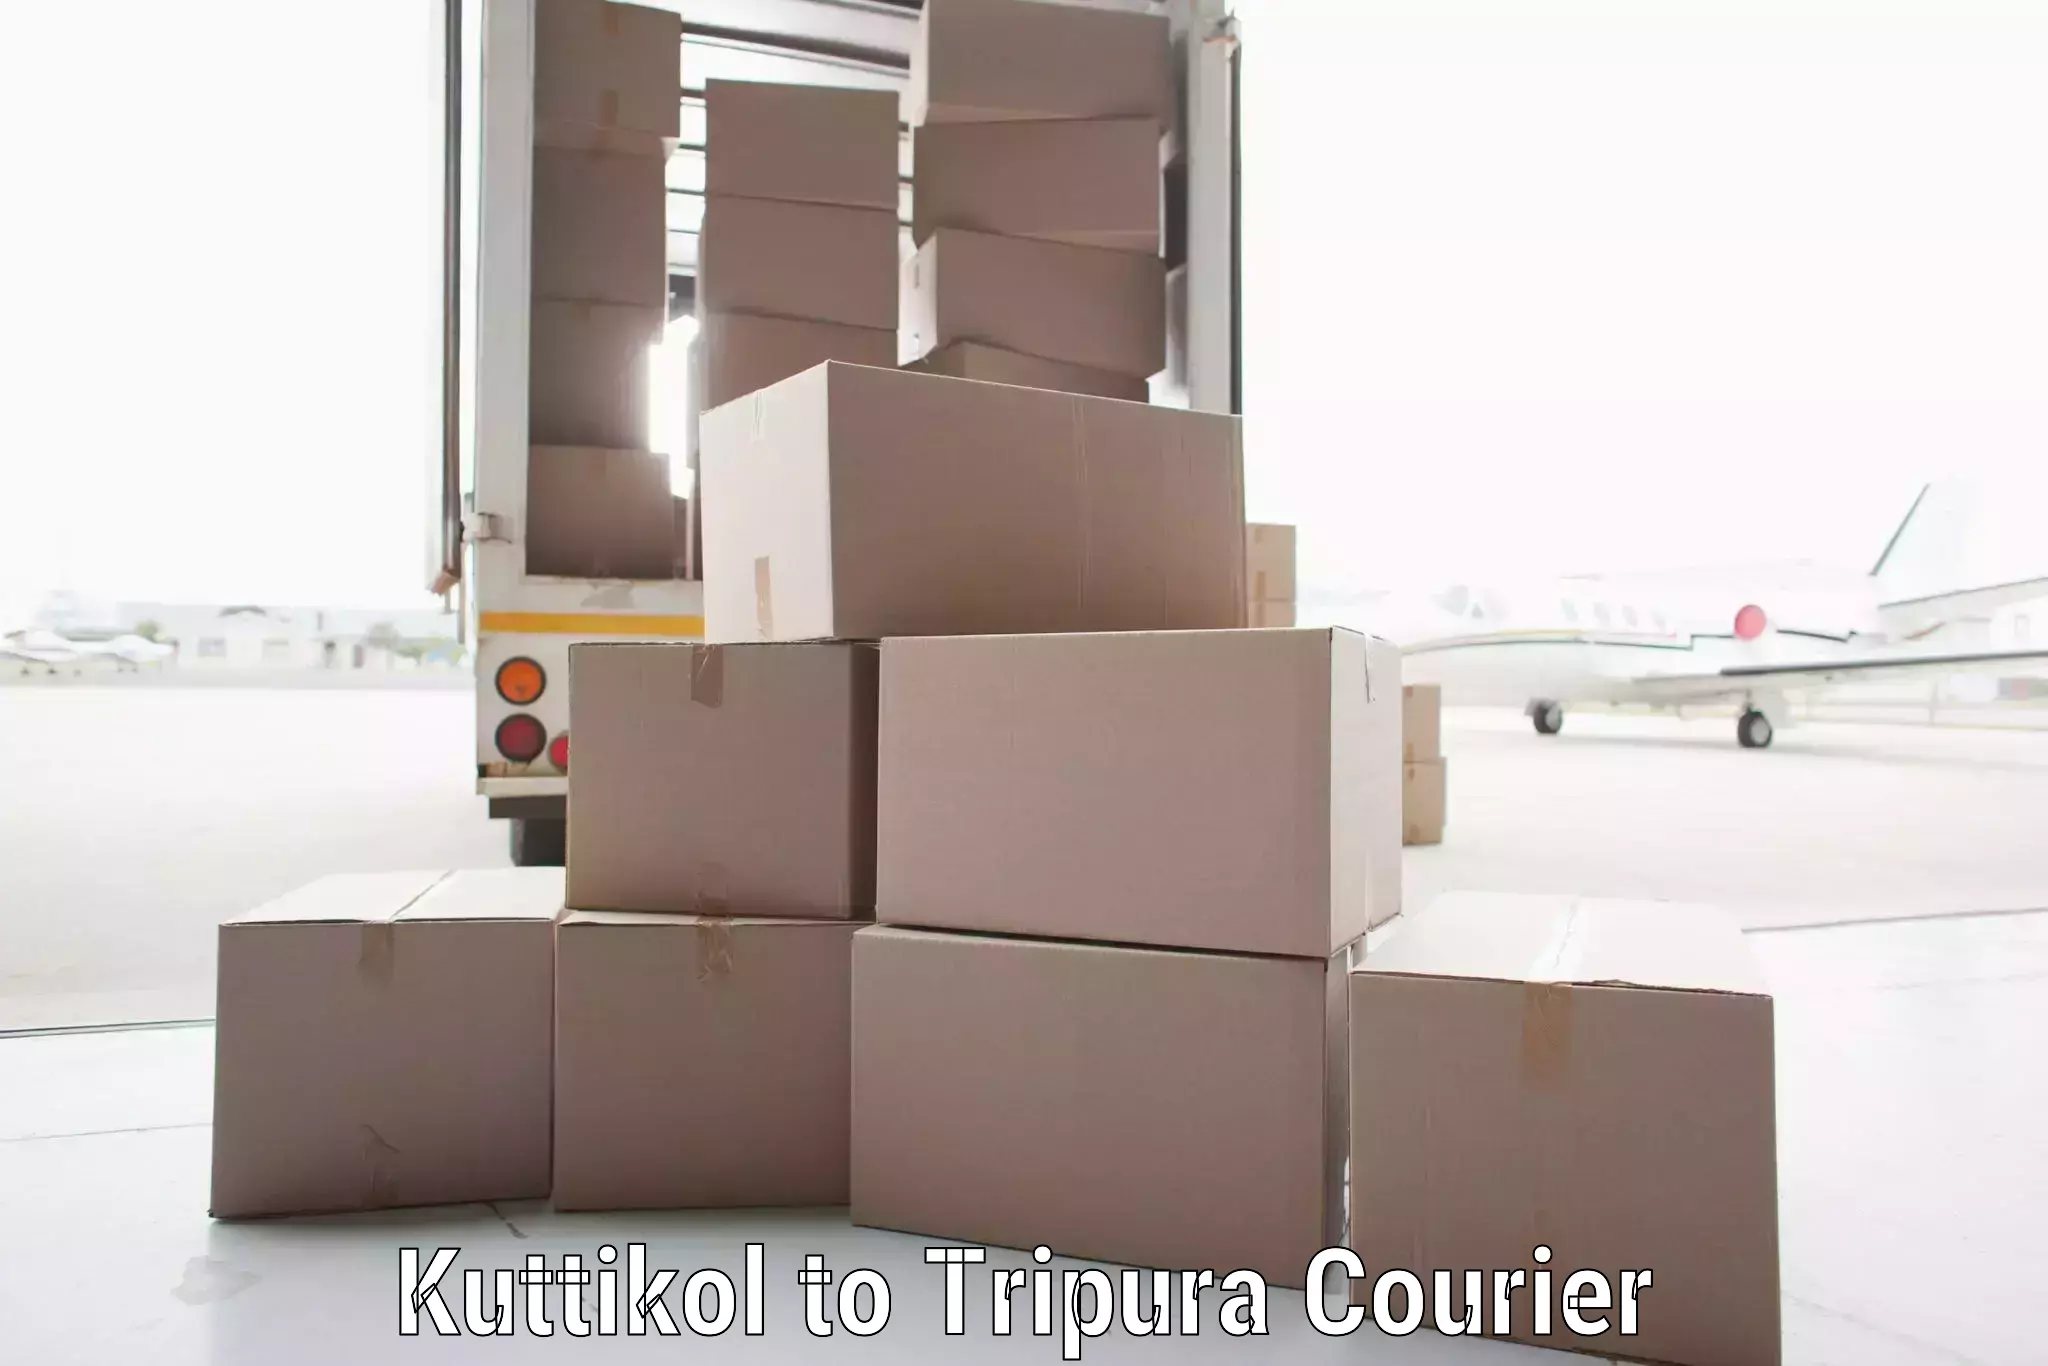 Efficient freight service Kuttikol to Dharmanagar